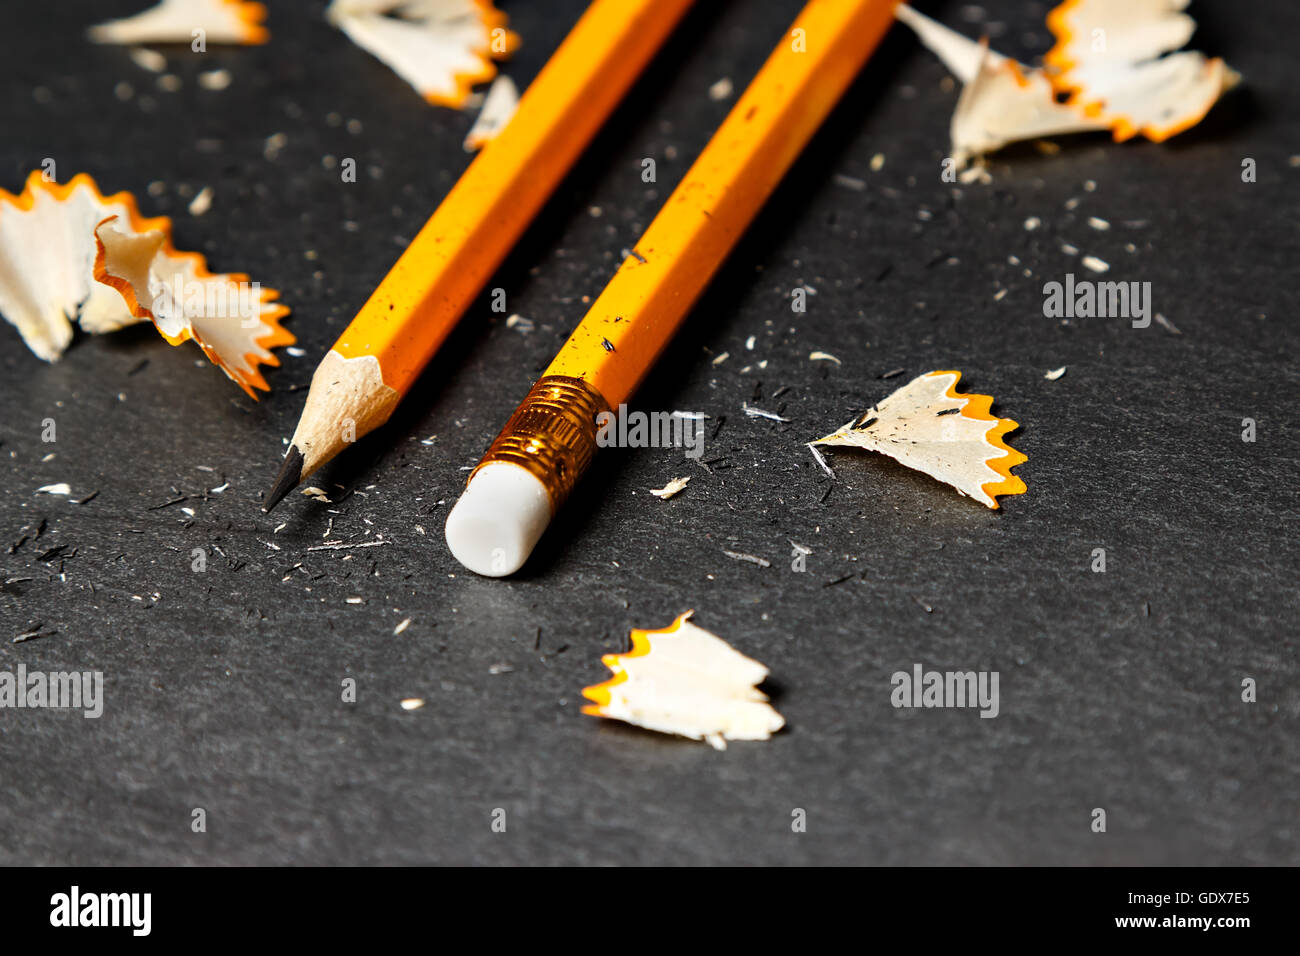 Zwei Bleistifte mit Späne auf schwarzem Hintergrund. Horizontales Bild. Stockfoto